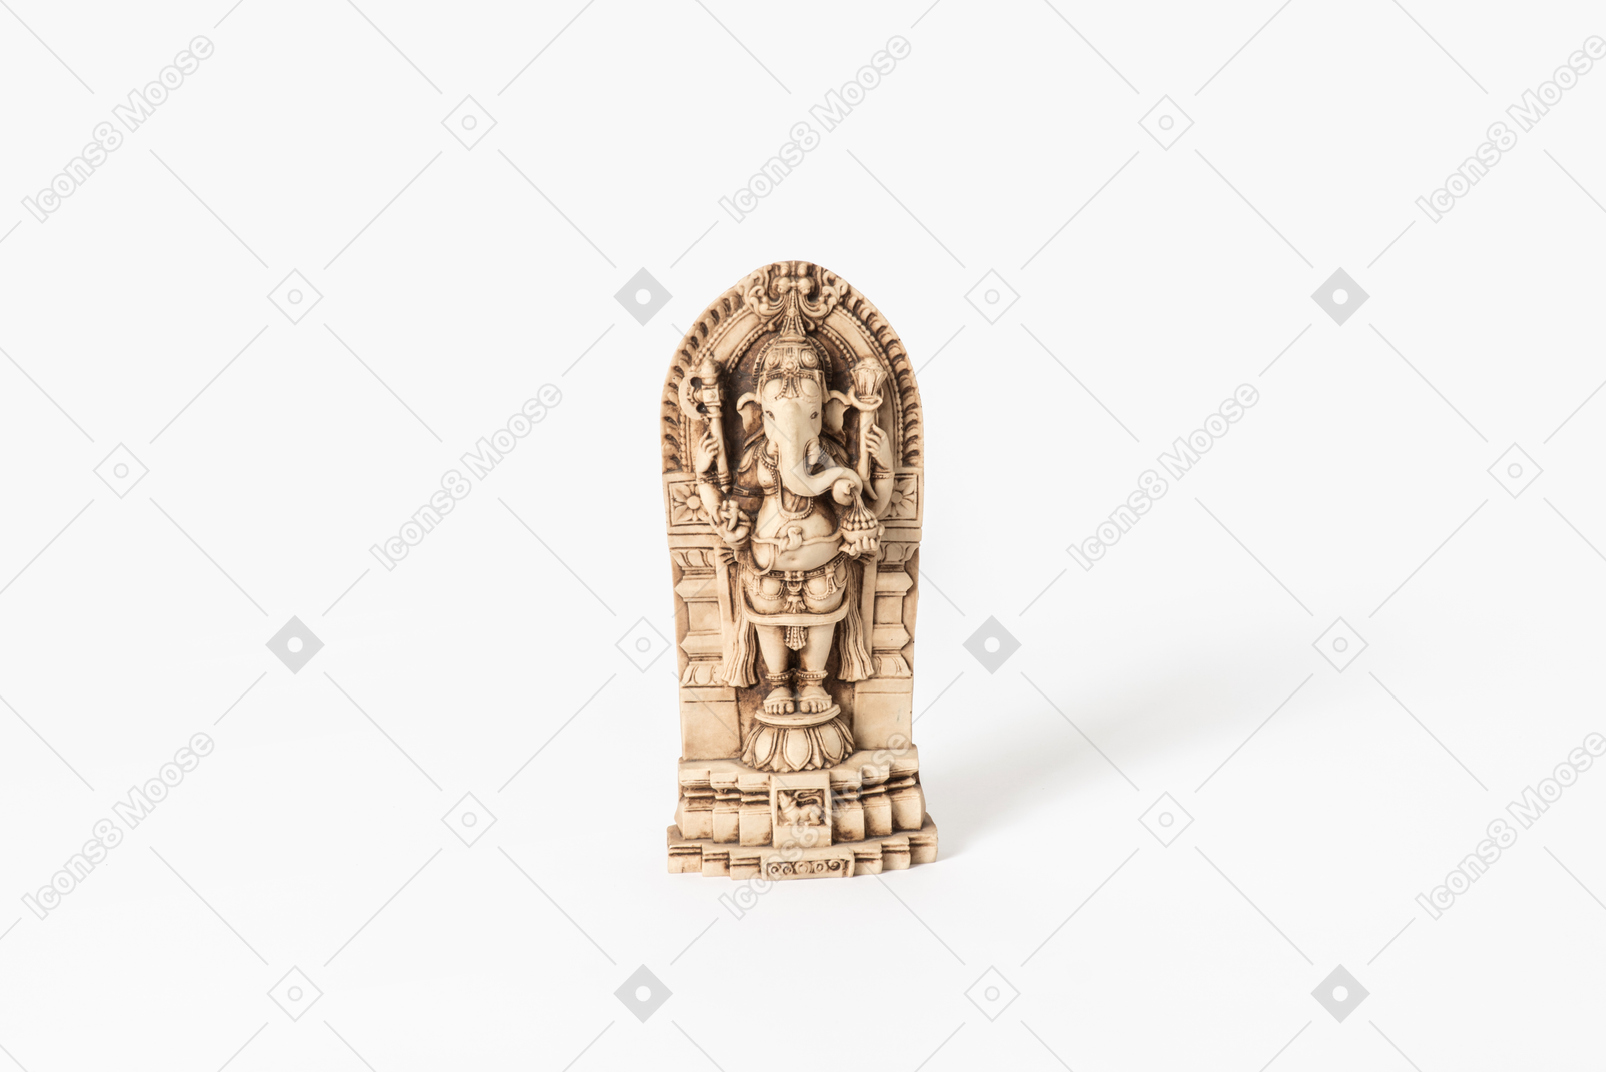 Ganesh the elephant god statue on white background